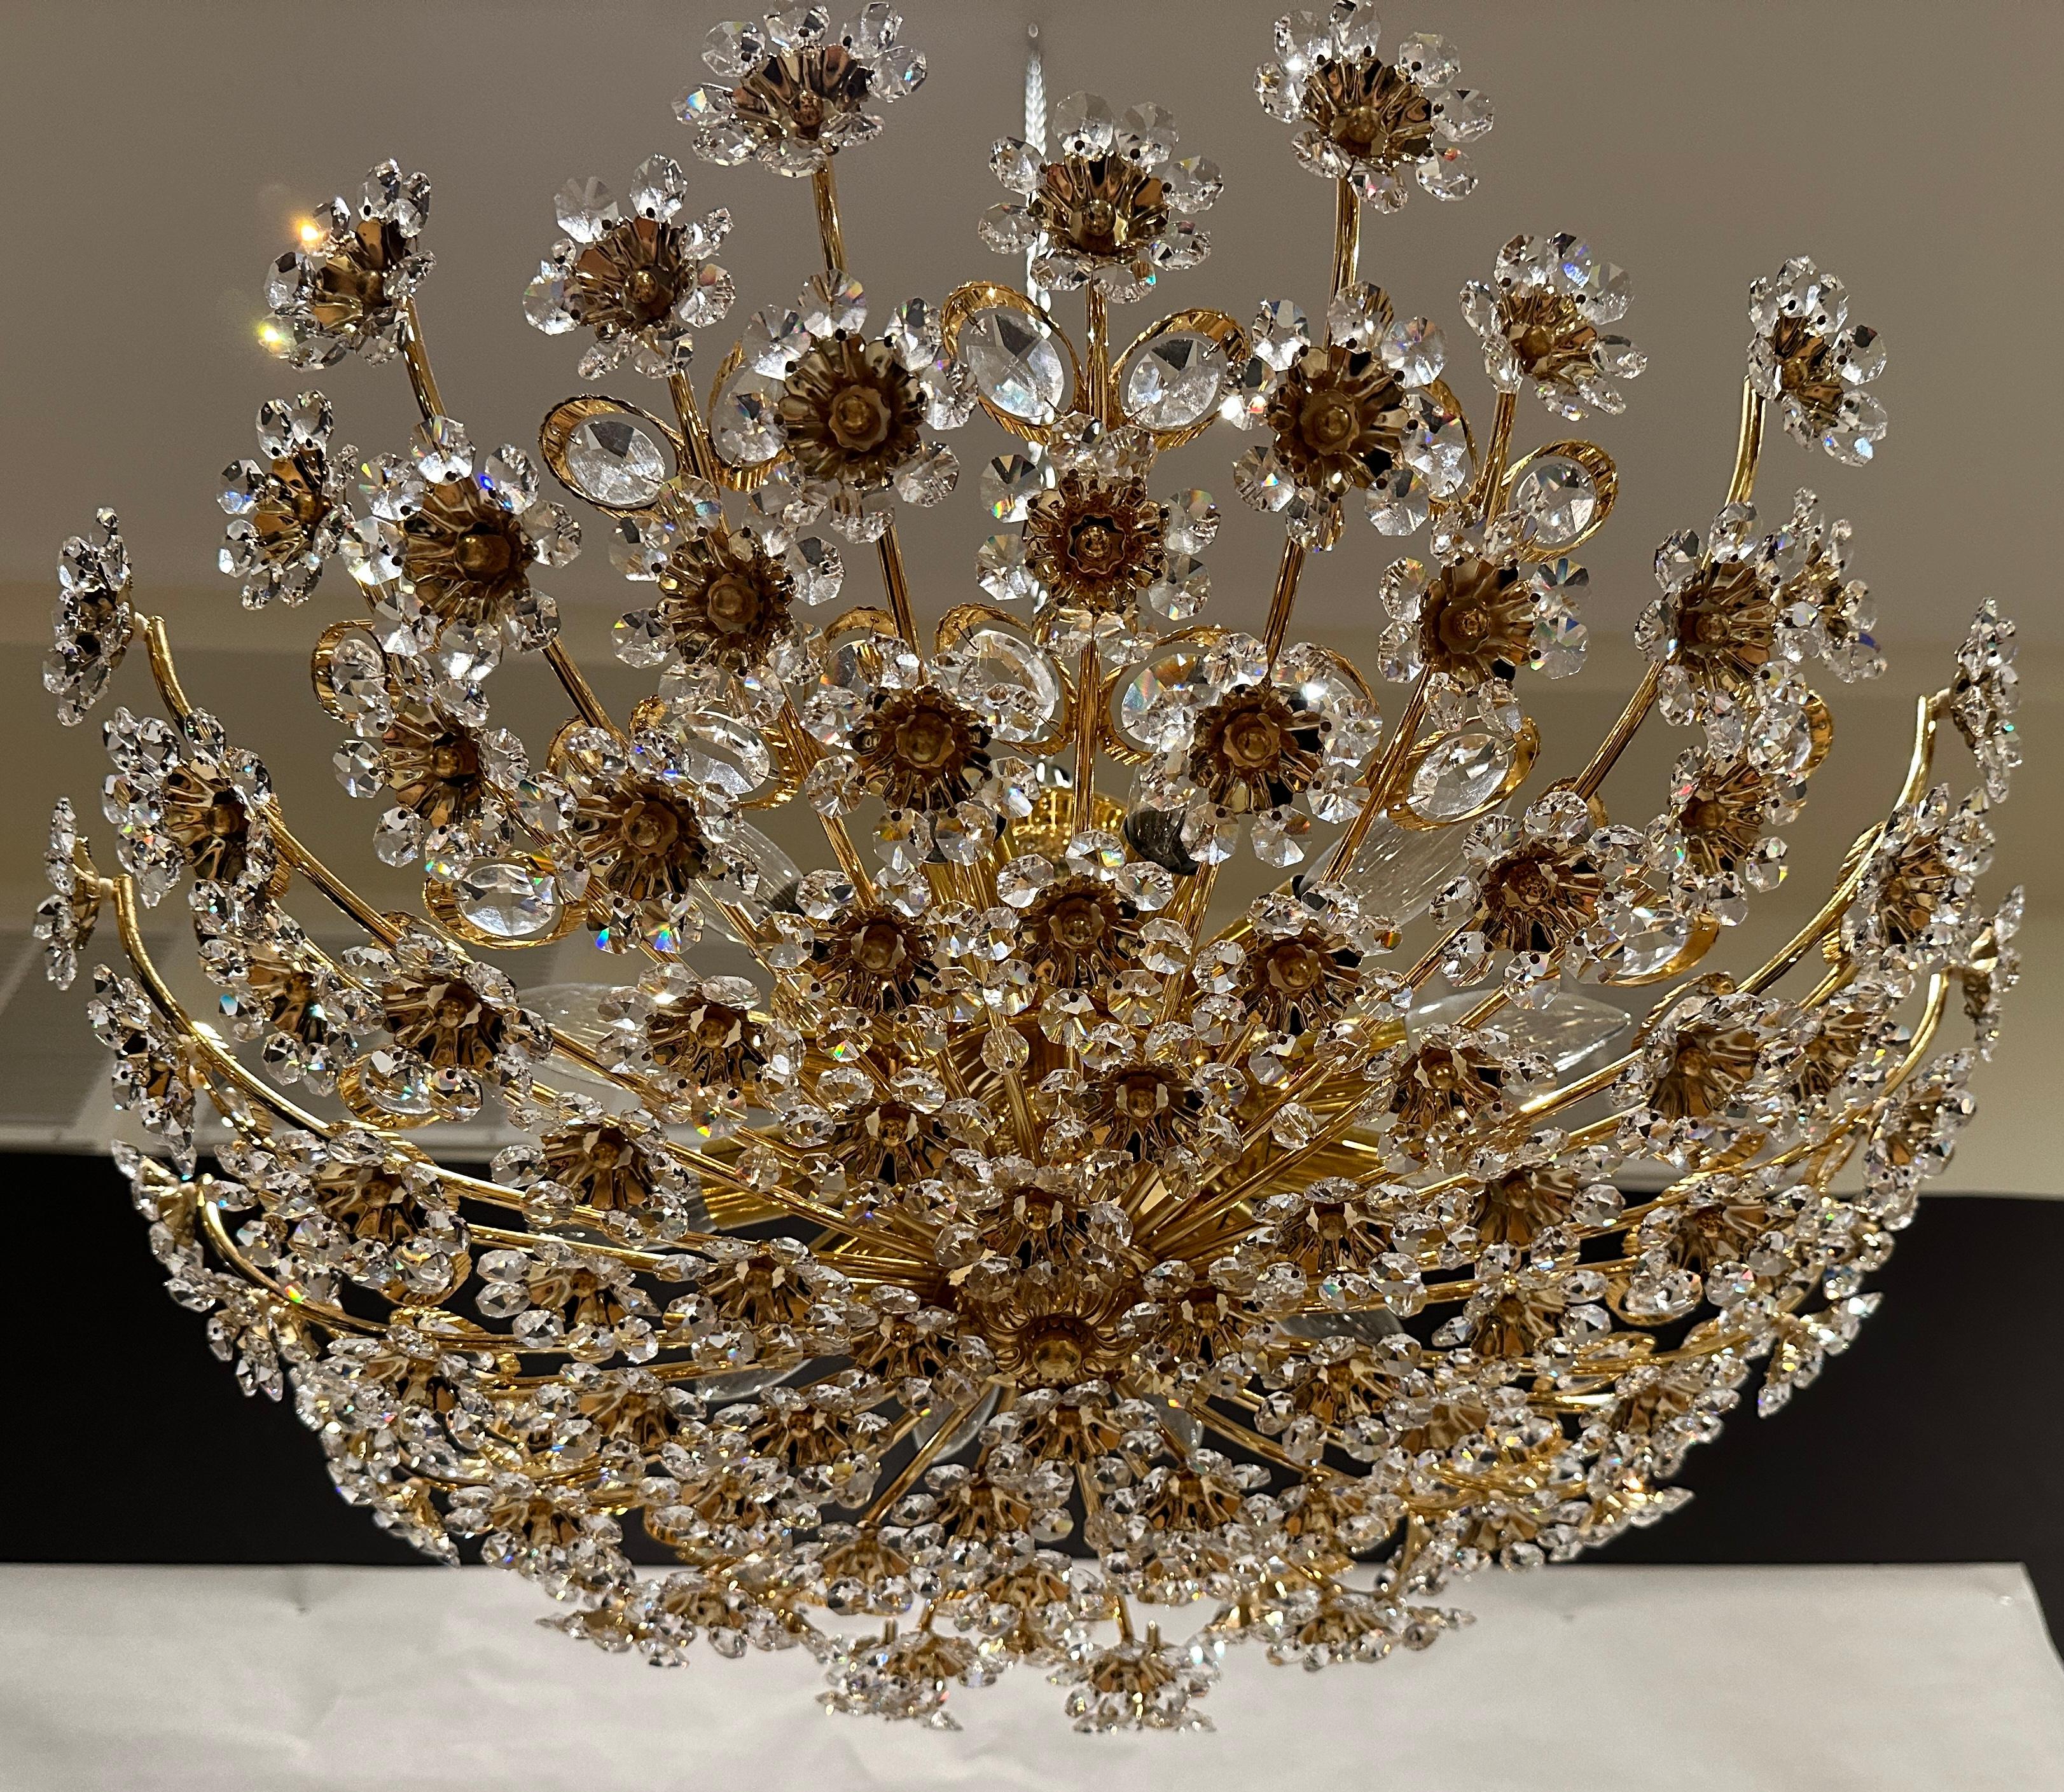 Großer runder vergoldeter Messing-Metall-Kristallglas-Kronleuchter mit Blumenmotiv von Palwa, Deutschland, ca. 1960-1970. 12 Lichter. Diese brillante und wunderschöne Deckenleuchte hat viele schöne, handgeschliffene, facettierte Kristalle in Form